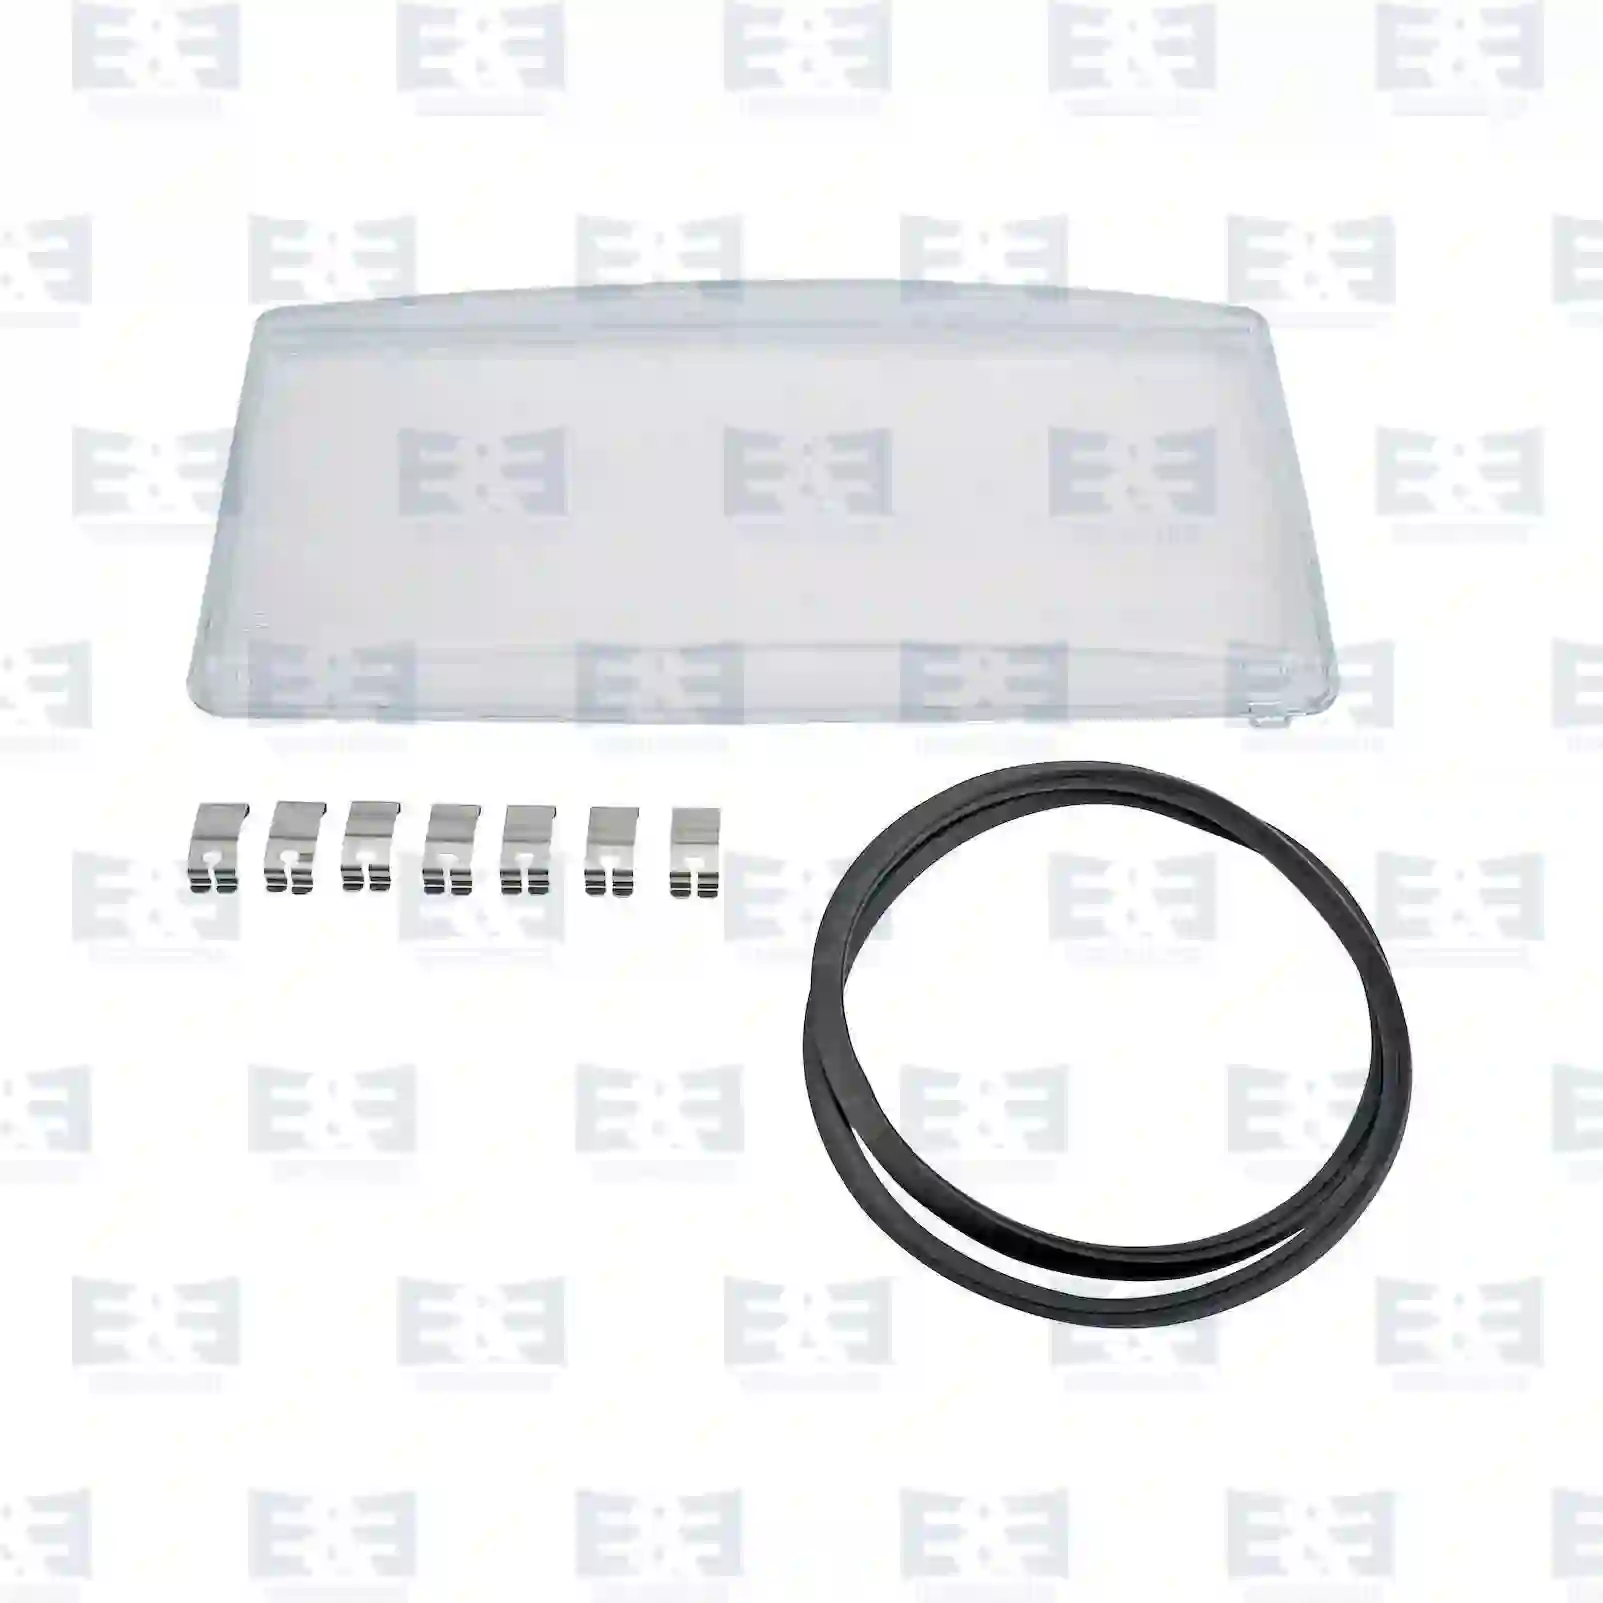  Headlamp glass, left || E&E Truck Spare Parts | Truck Spare Parts, Auotomotive Spare Parts